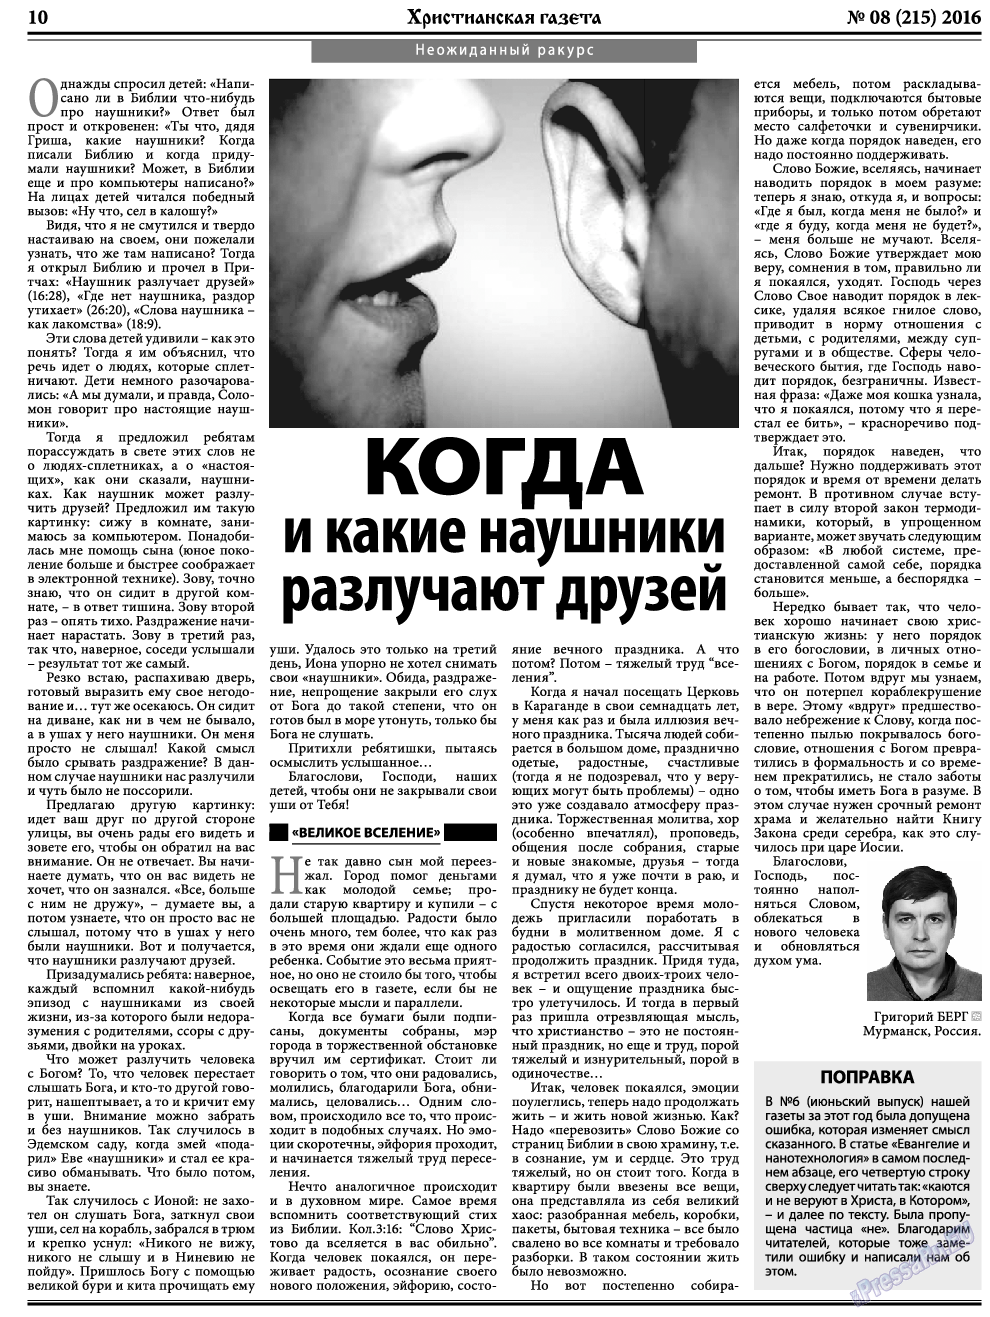 Христианская газета, газета. 2016 №8 стр.10